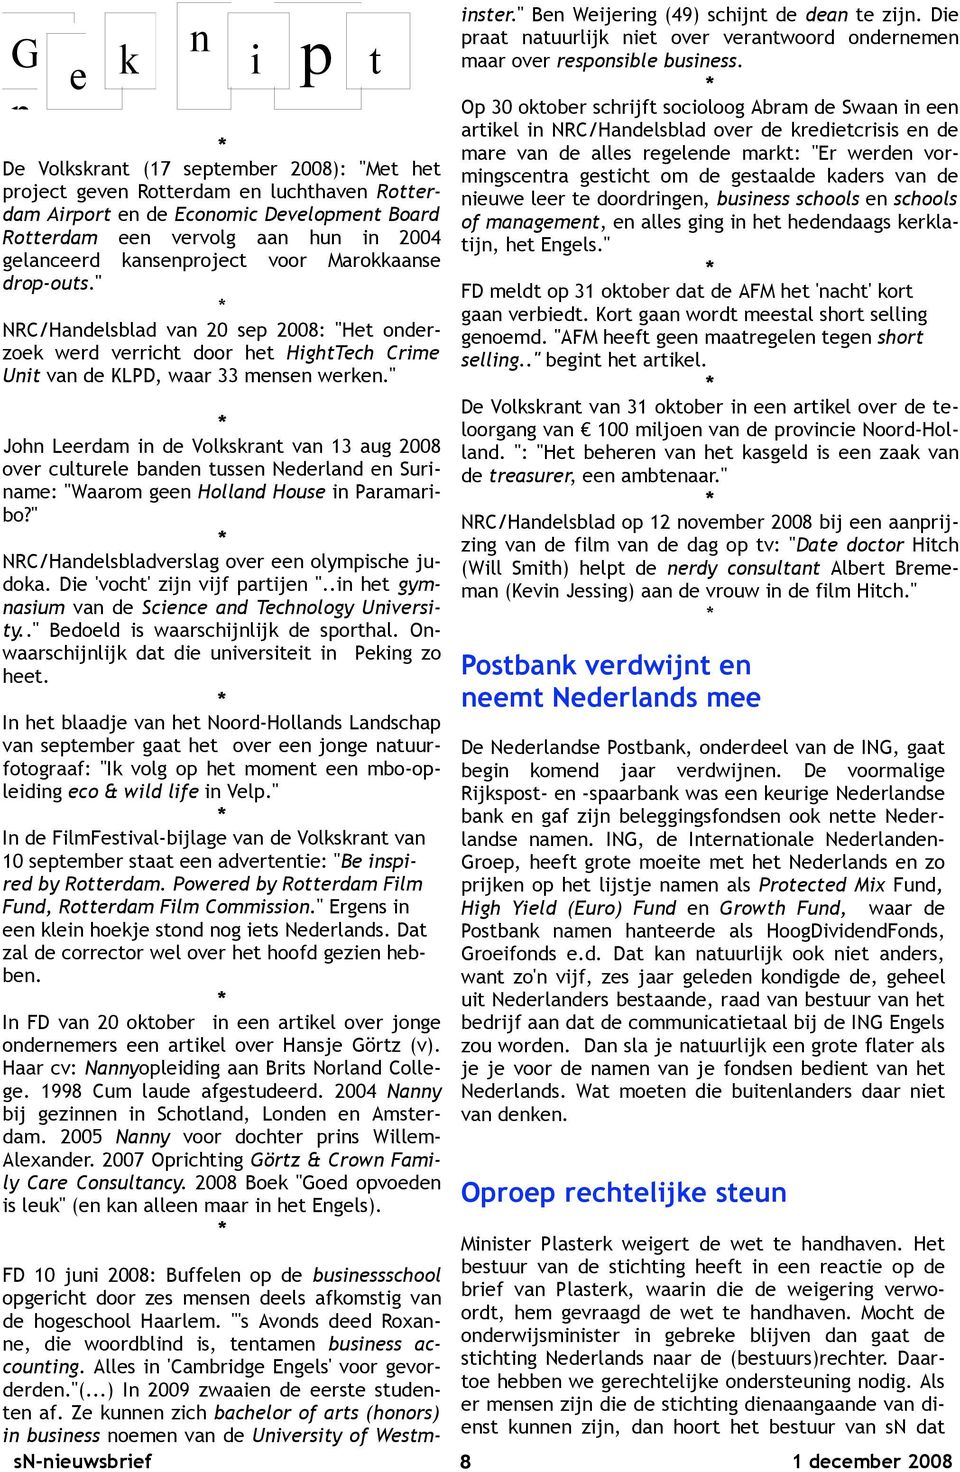 " John Leerdam in de Volkskrant van 13 aug 2008 over culturele banden tussen Nederland en Suriname: "Waarom geen Holland House in Paramaribo?" NRC/Handelsbladverslag over een olympische judoka.